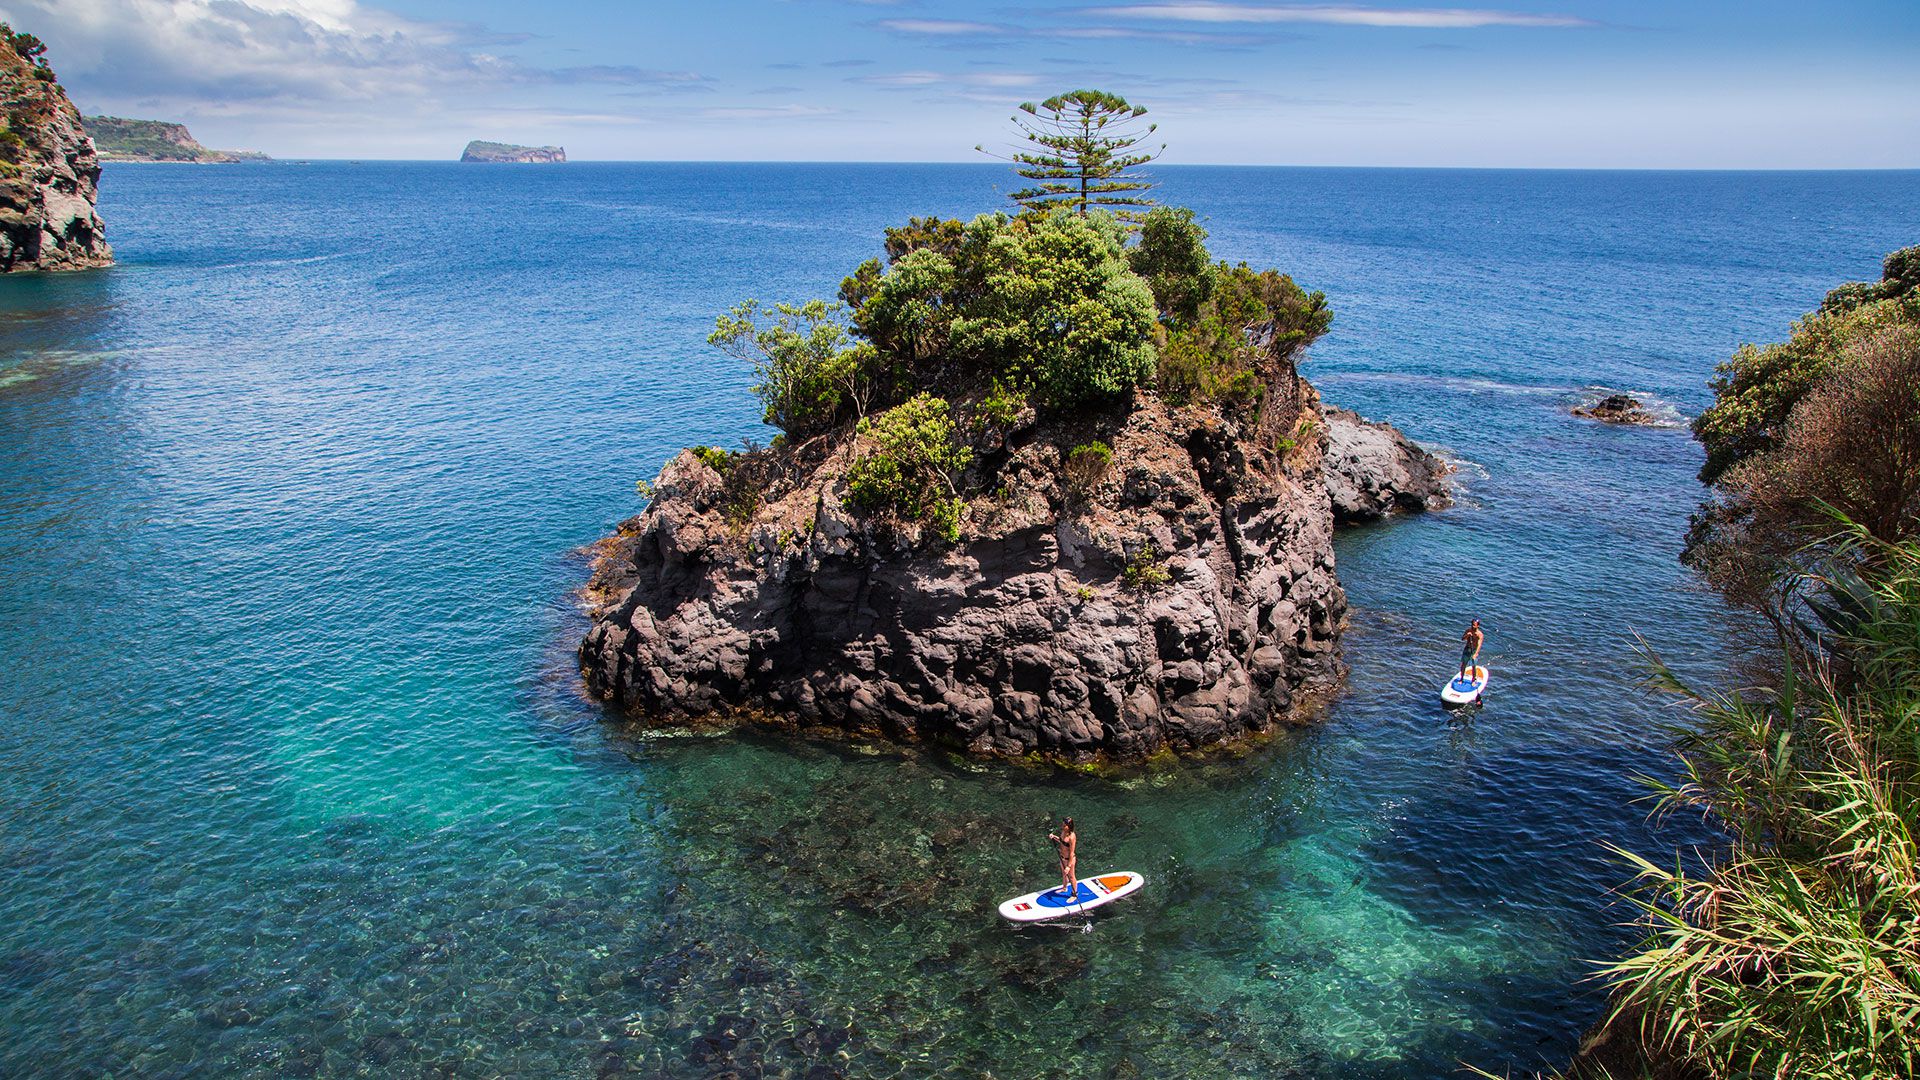 Las condiciones de las islas también hacen que el windsurf, el kayak, el stand up paddle y otras actividades acuáticas sean excelentes (Shutterstock)